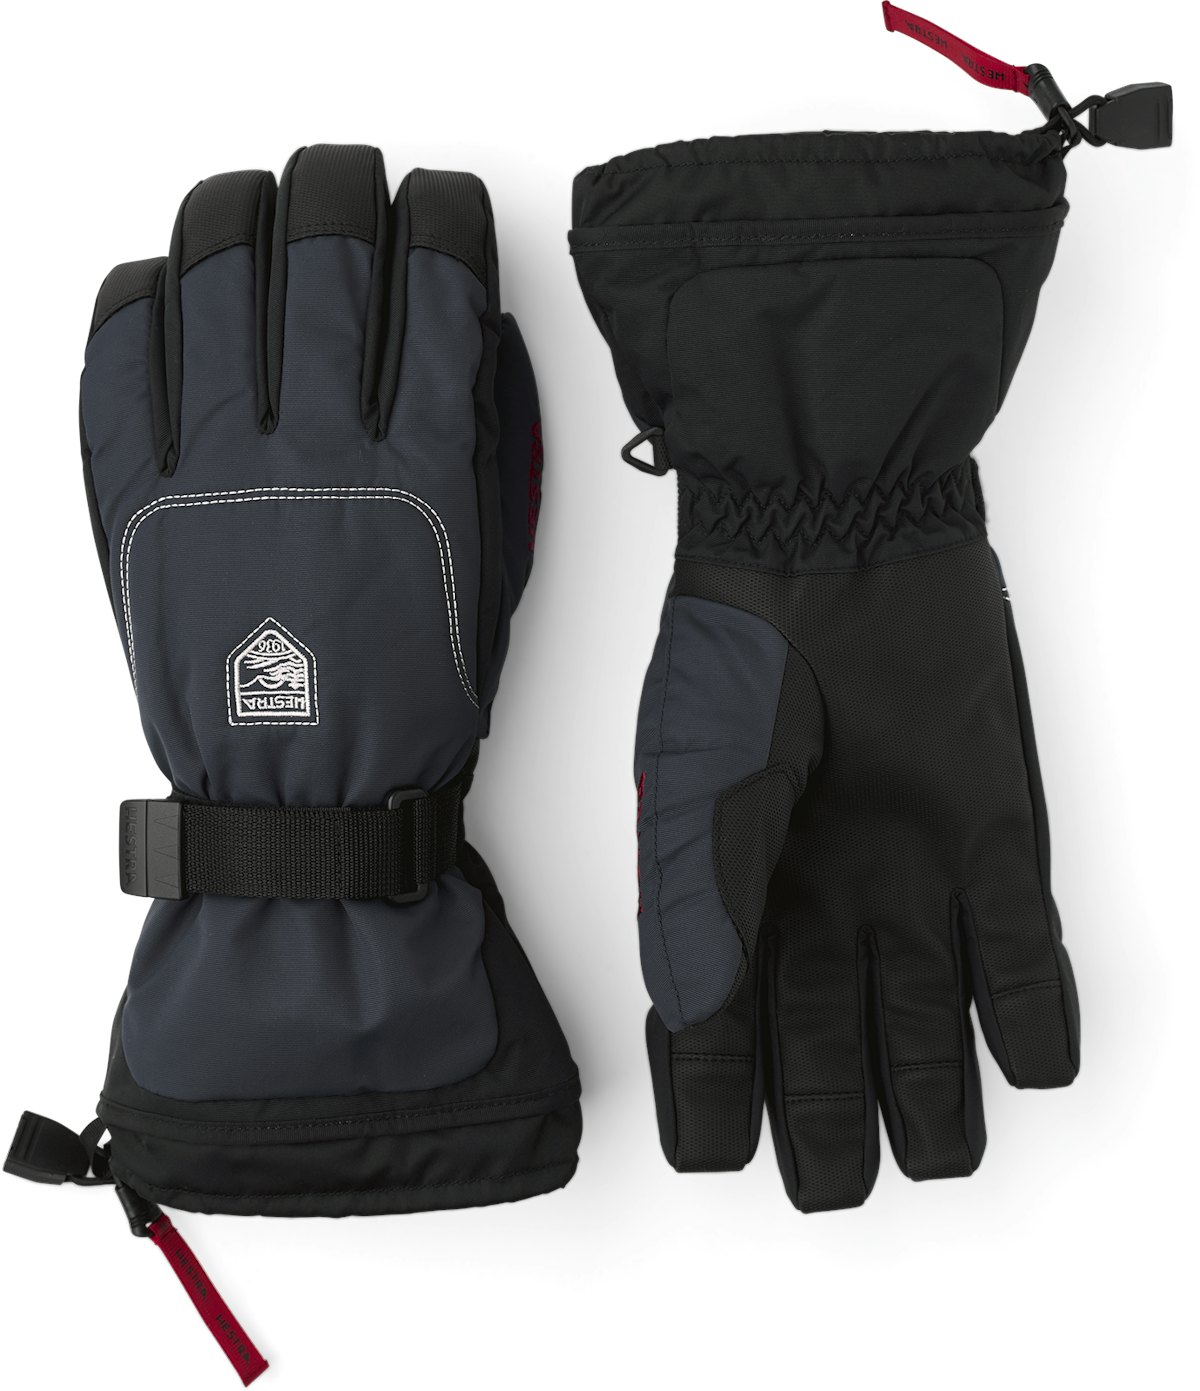 Нижние перчатки купить. Перчатки Hestra Highland Glove, Dark Forest перчатки тактические. Перчатки Hestra Climber long - 5 finger.